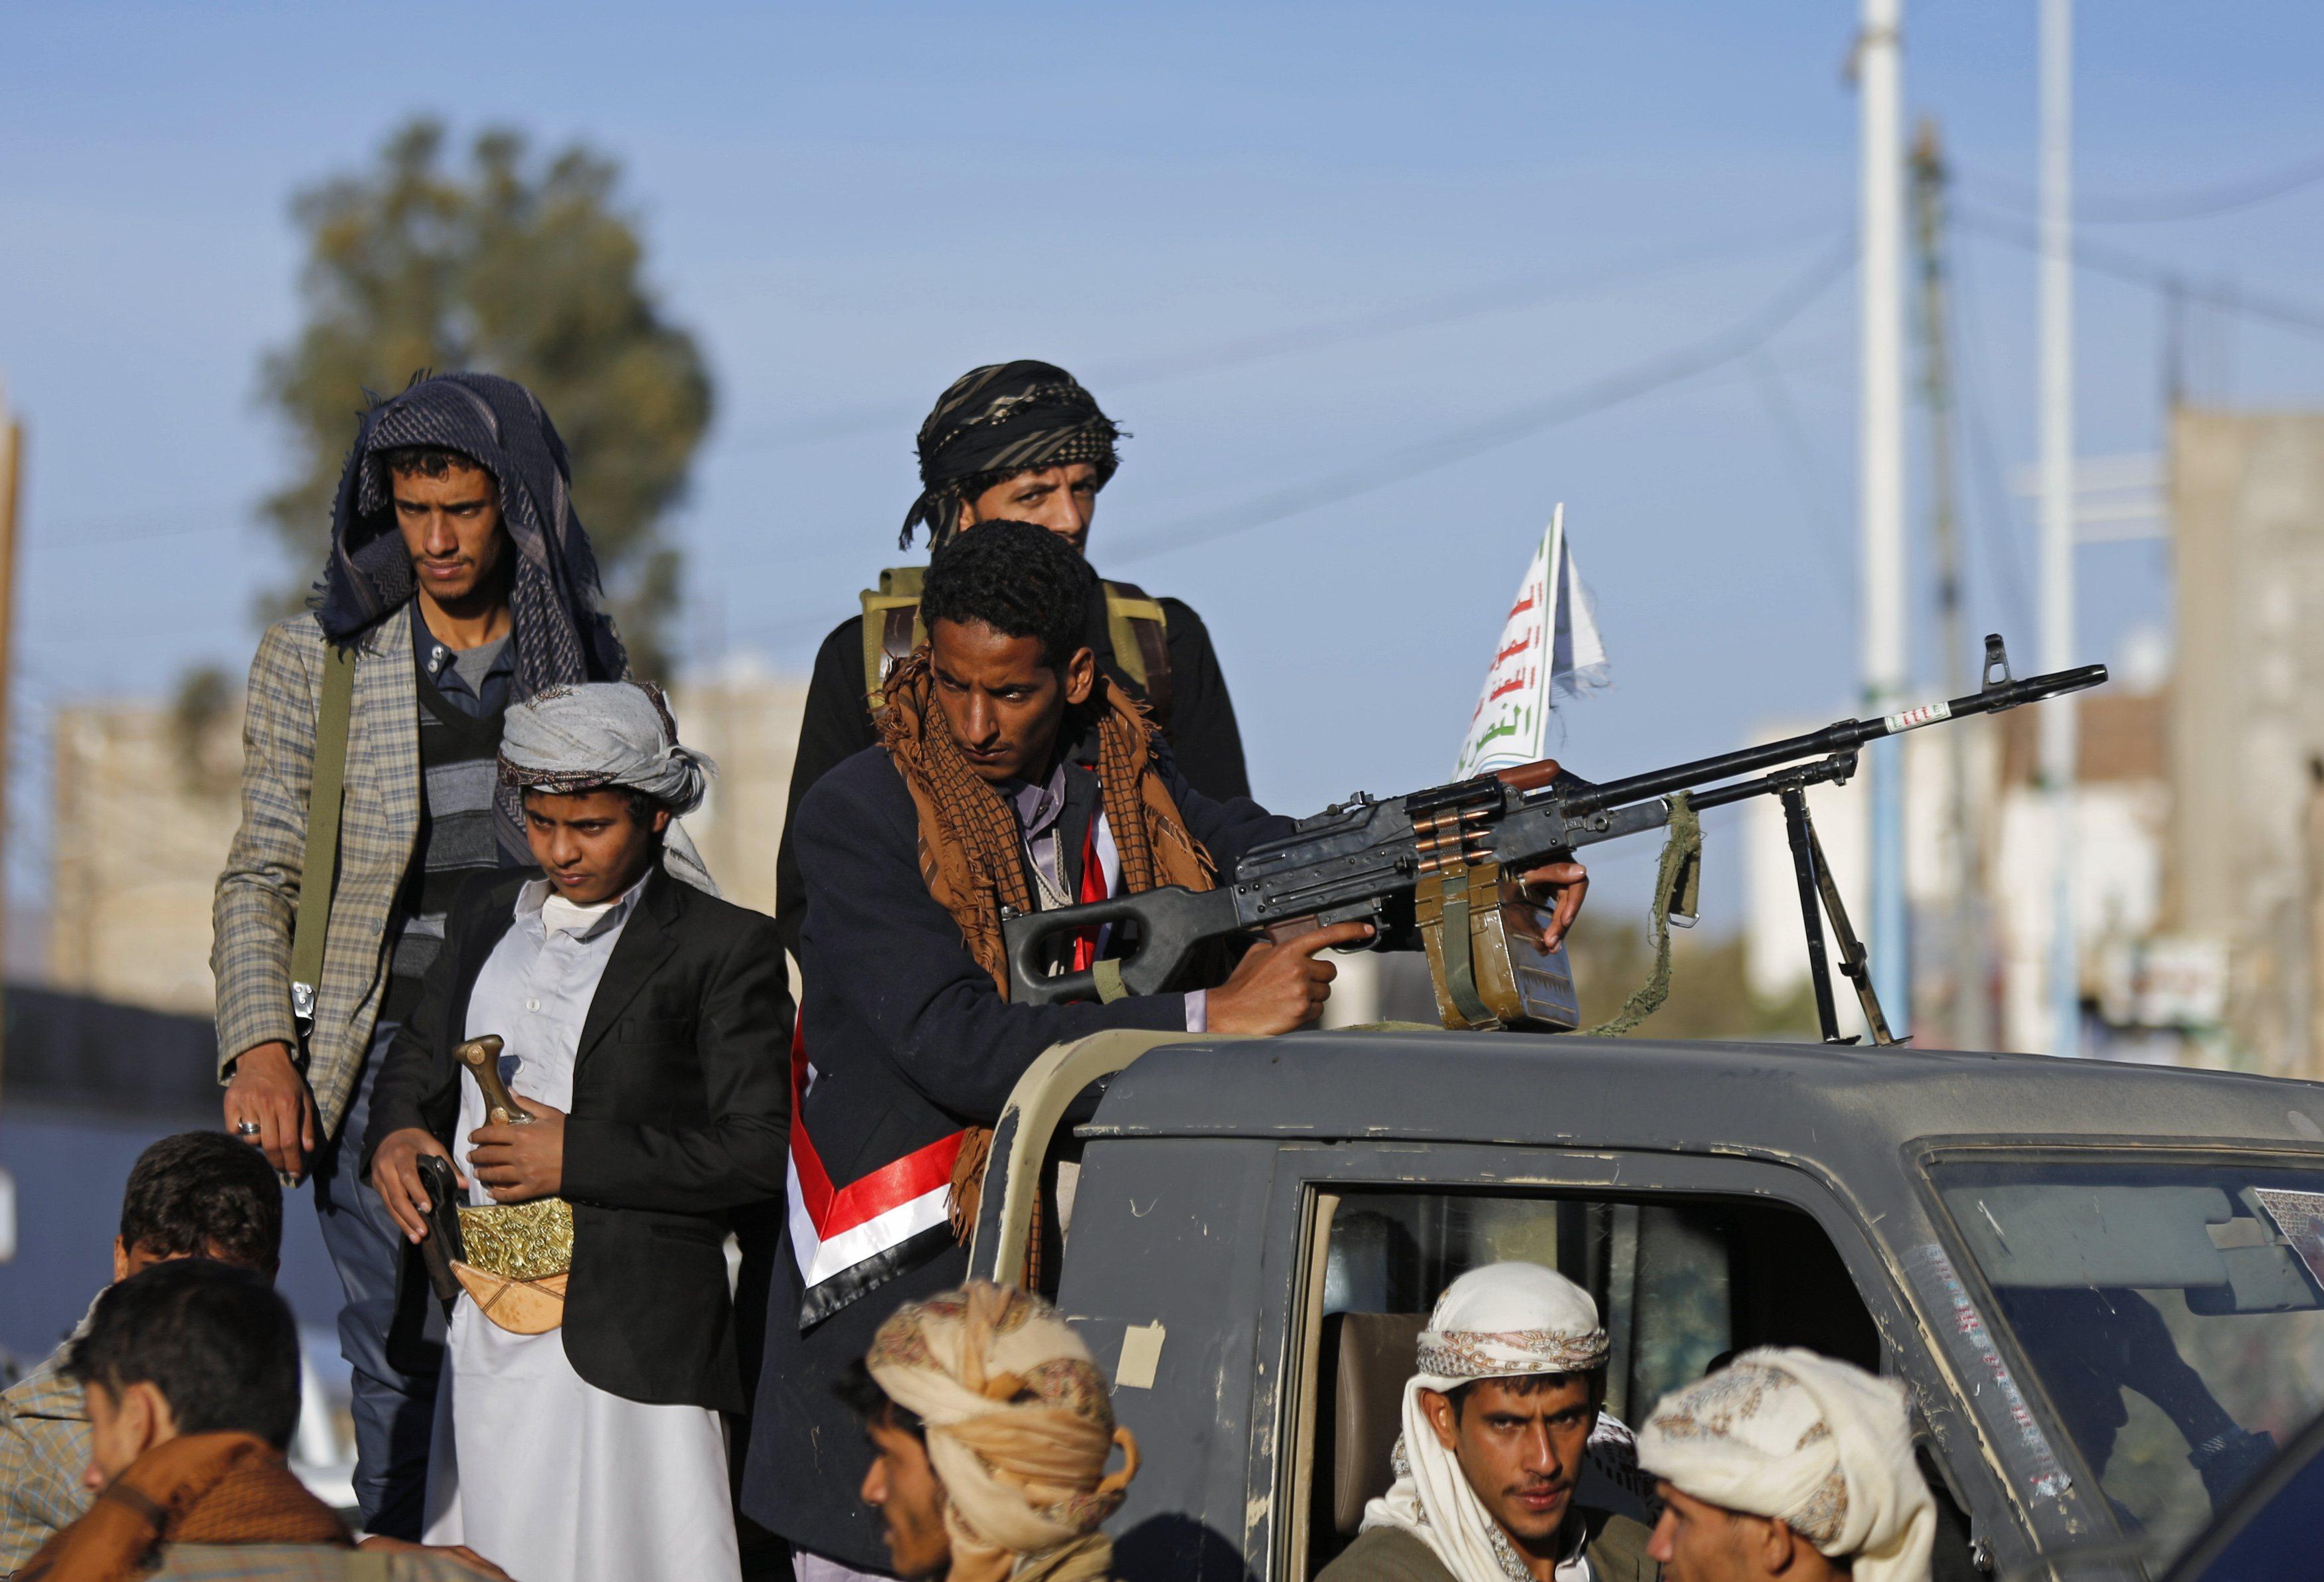   7 أحزاب يمنية تُحمّل الحوثيين مسئولية  الحرب ونتائجها